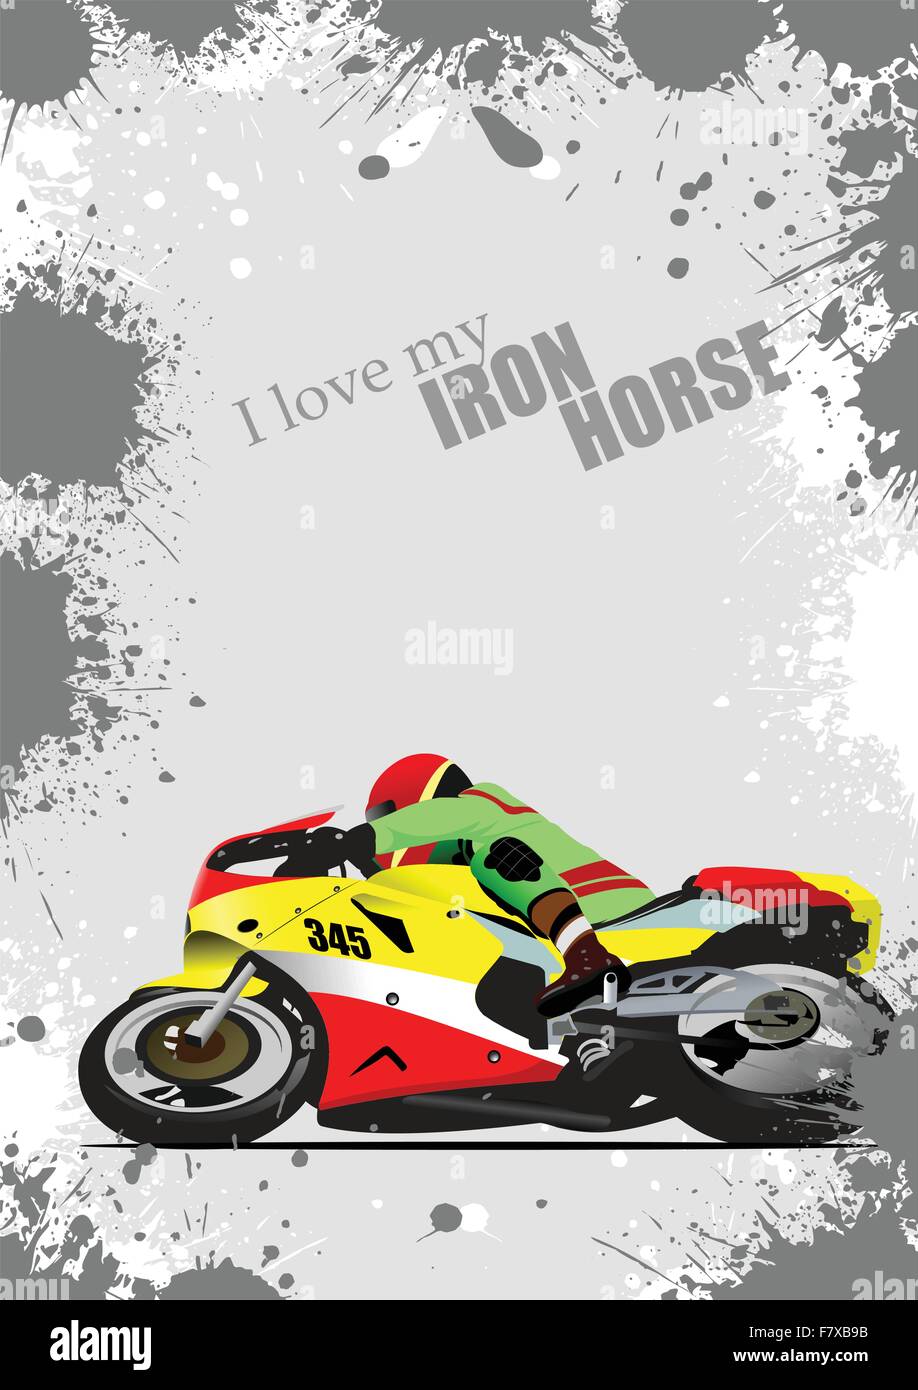 Grunge grauen Hintergrund mit Motorrad Bild. Iron Horse. Vektor Stock Vektor